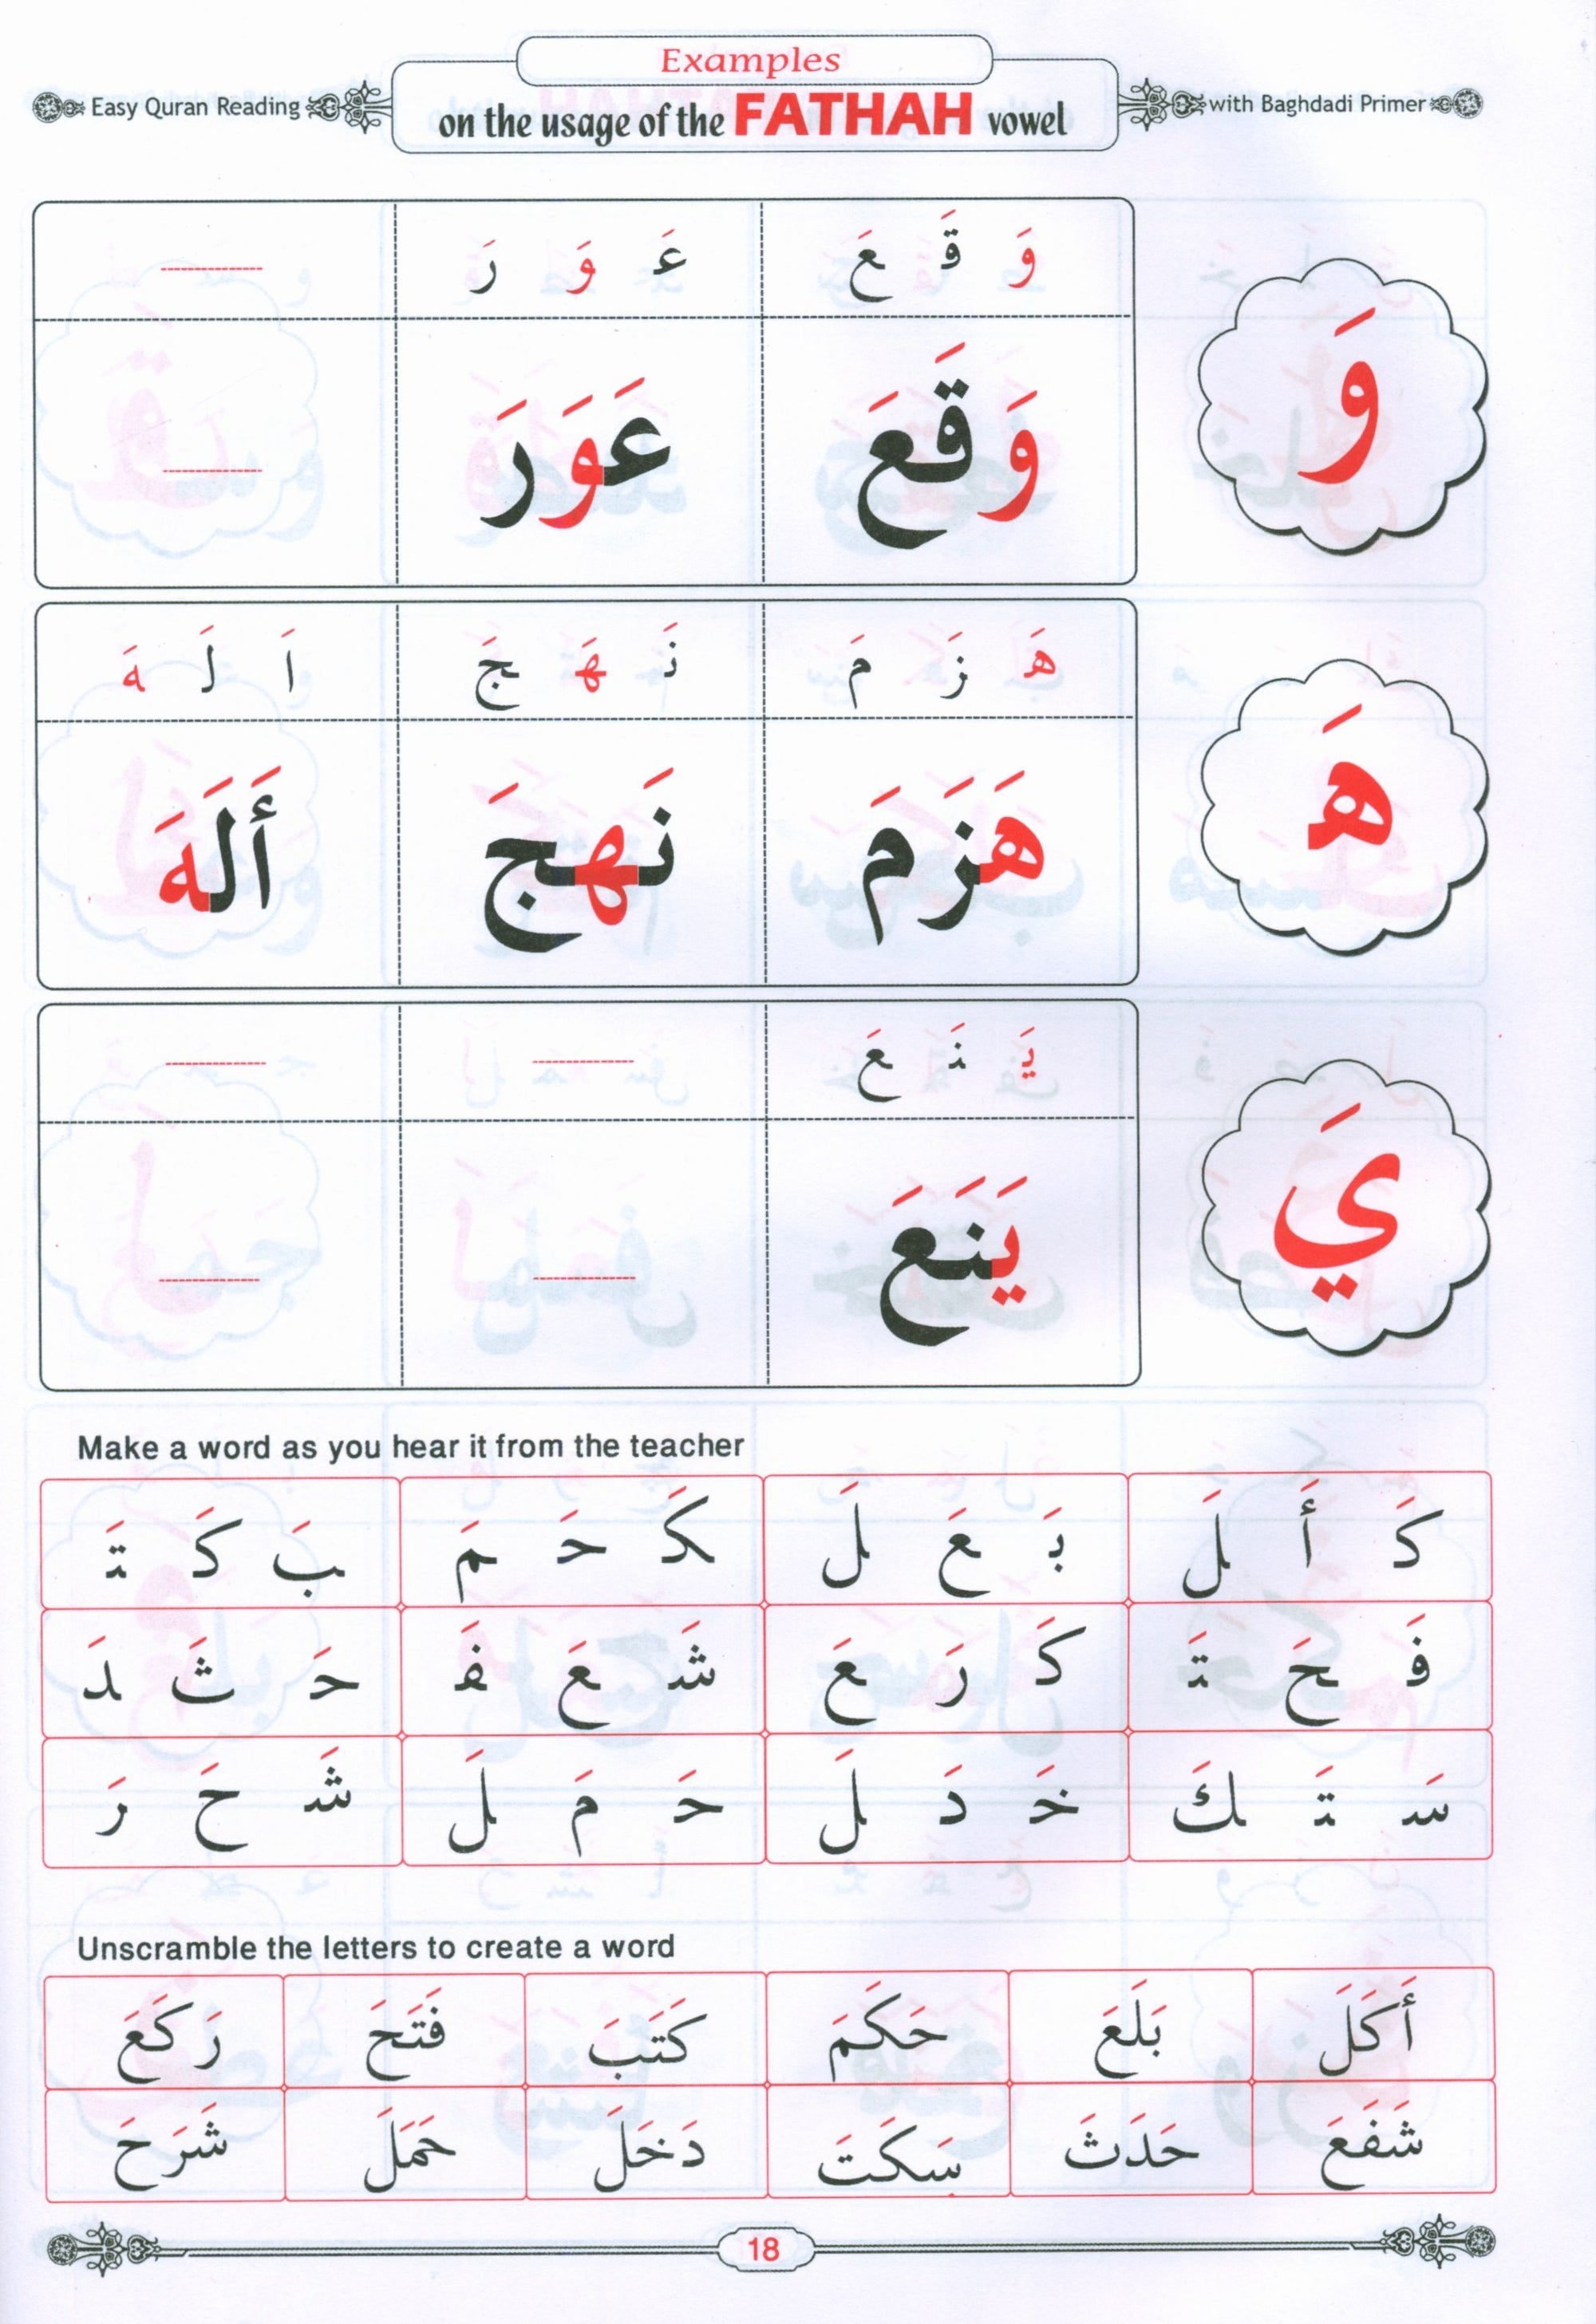 Easy Qur'an Reading with Baghdadi Primer Combined معلم القراءة العربية والقرآن - القاعدة البغدادية